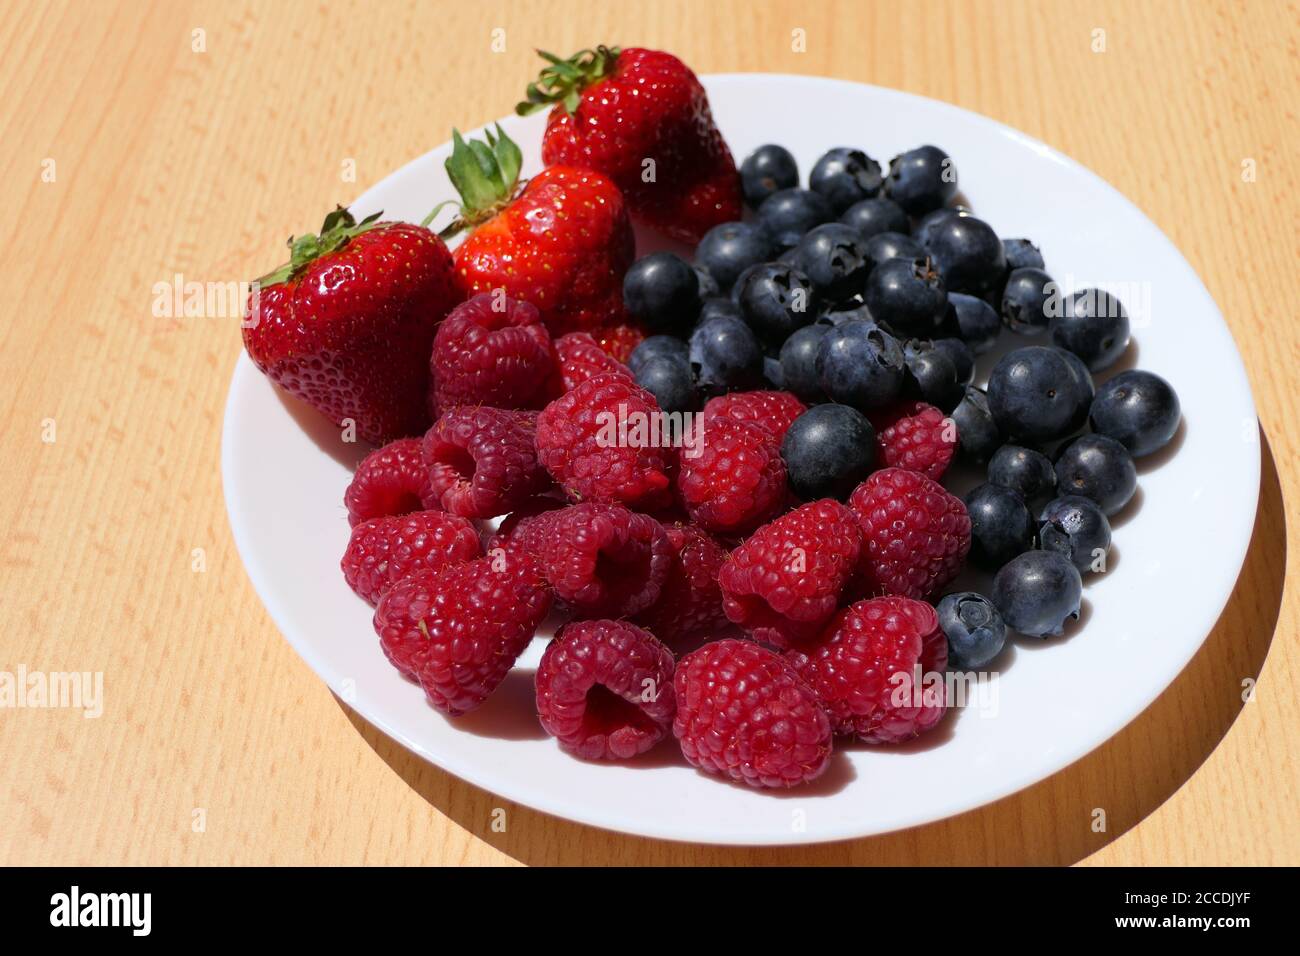 Weißer Teller mit gemischten Beeren einschließlich Erdbeeren, Himbeeren und Heidelbeeren auf einem Holztisch Stockfoto